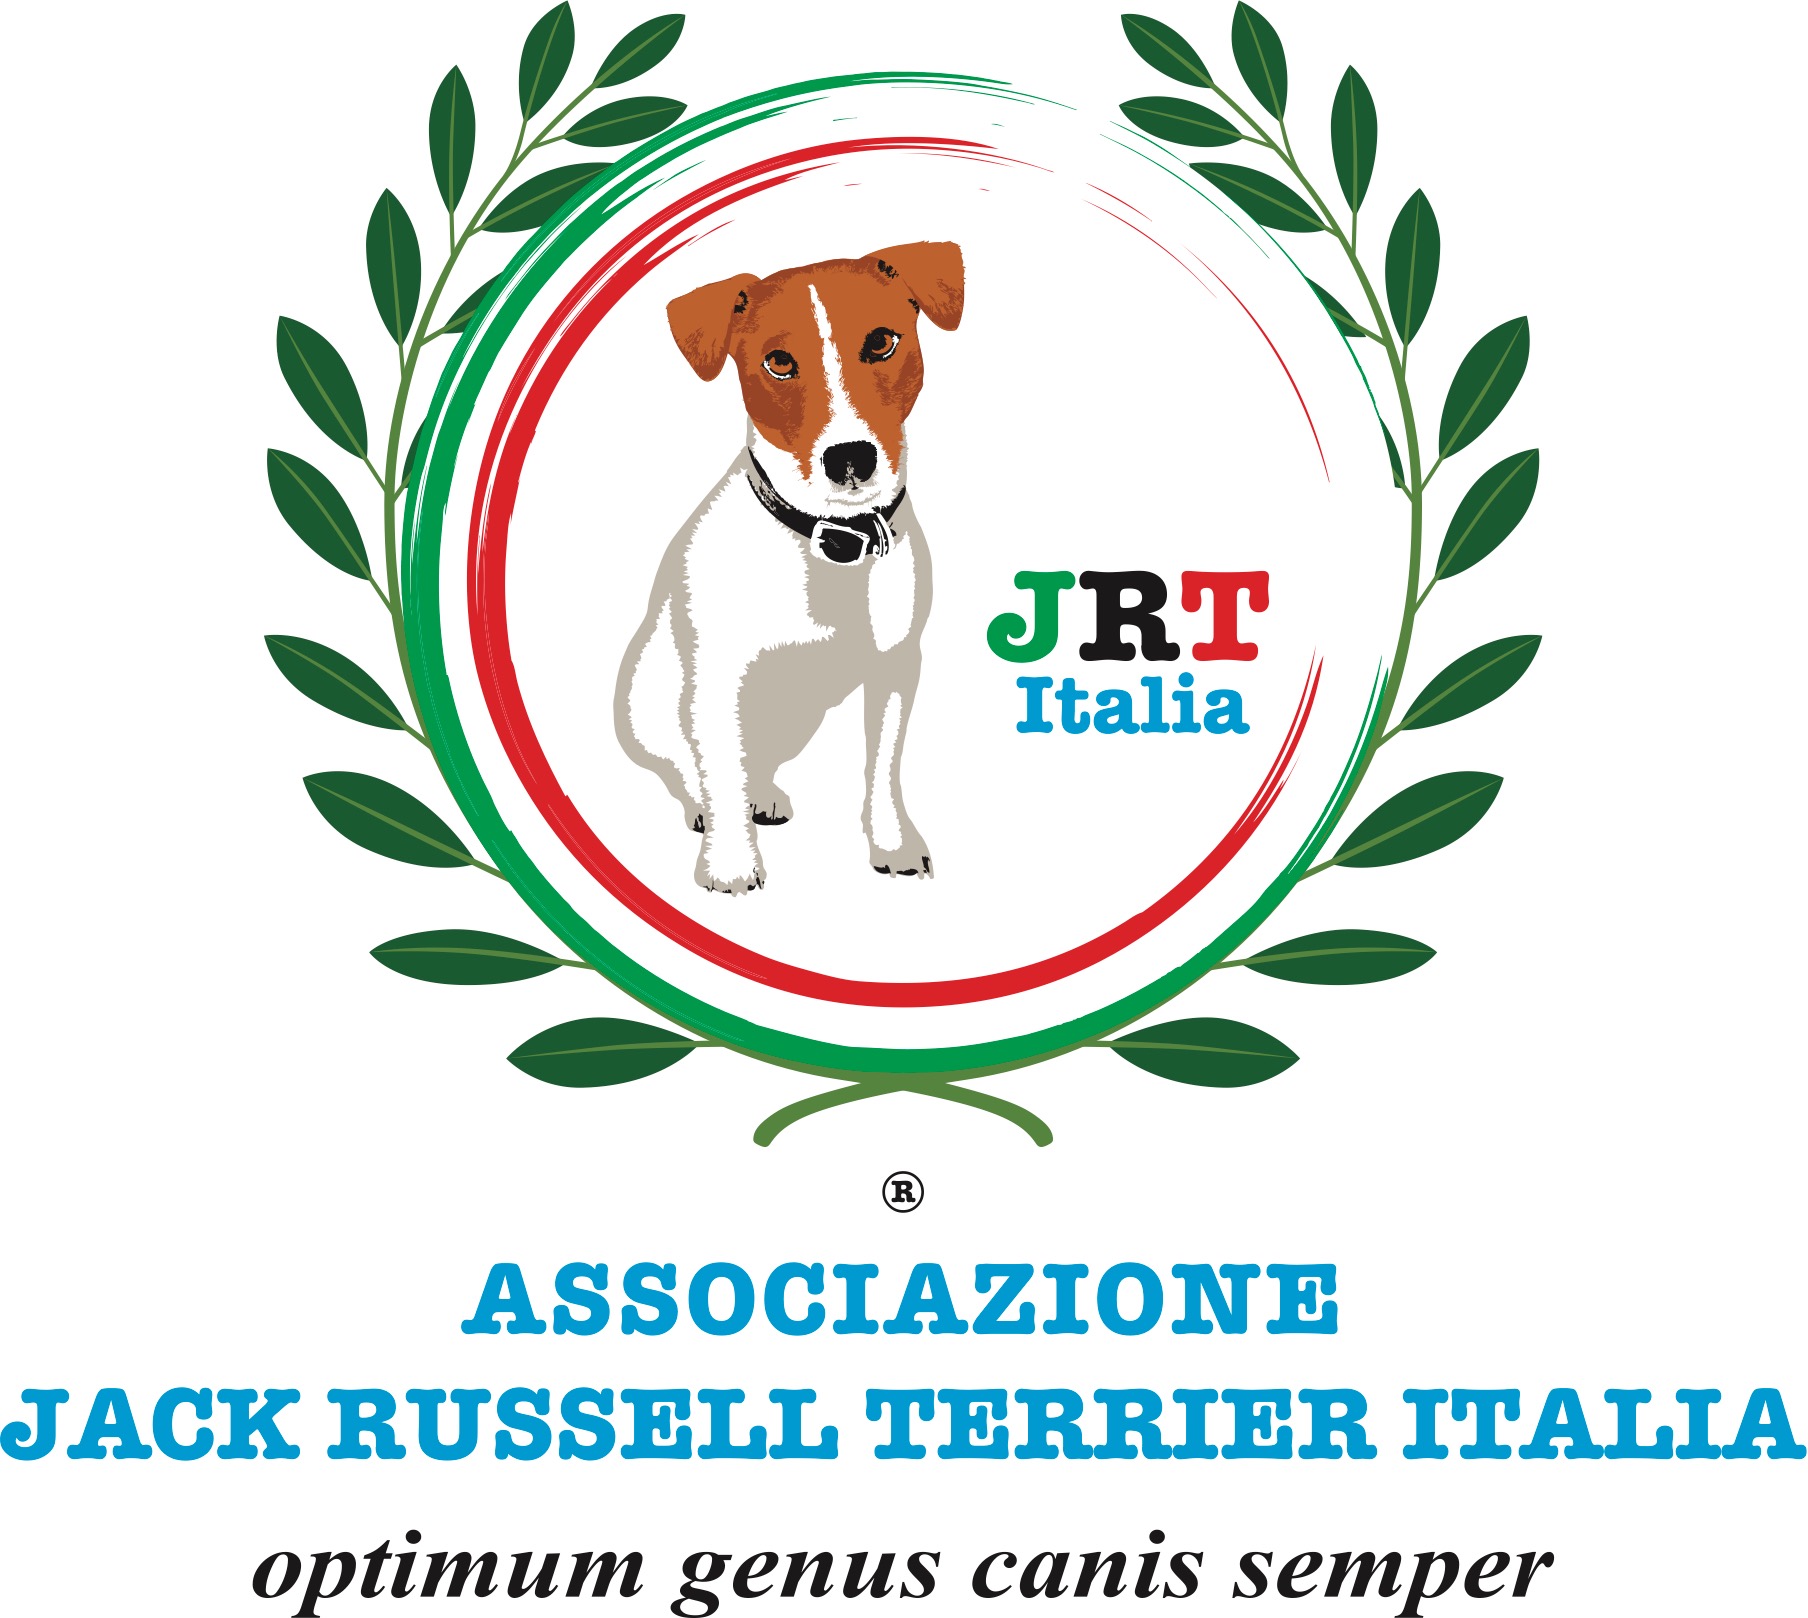 Jack Russell Terrier Italia